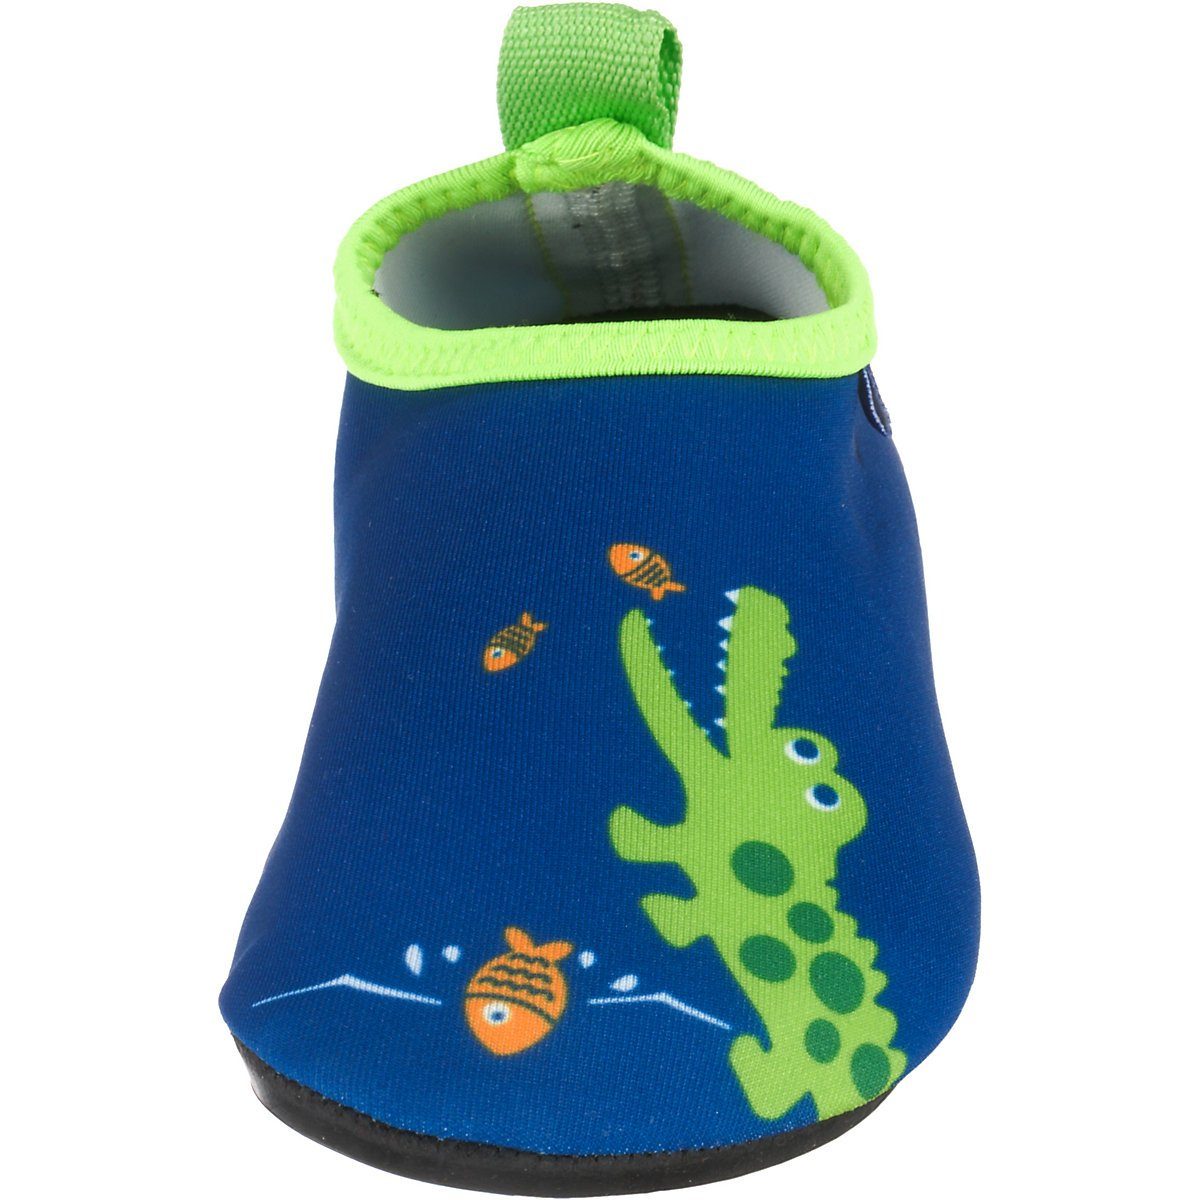 Playshoes Badeschuhe Motiv Badeschuh Wasserschuhe Barfuß-Schuh flexible Passform, rutschhemmender mit Sohle Schwimmschuhe, Krodkodil-blau